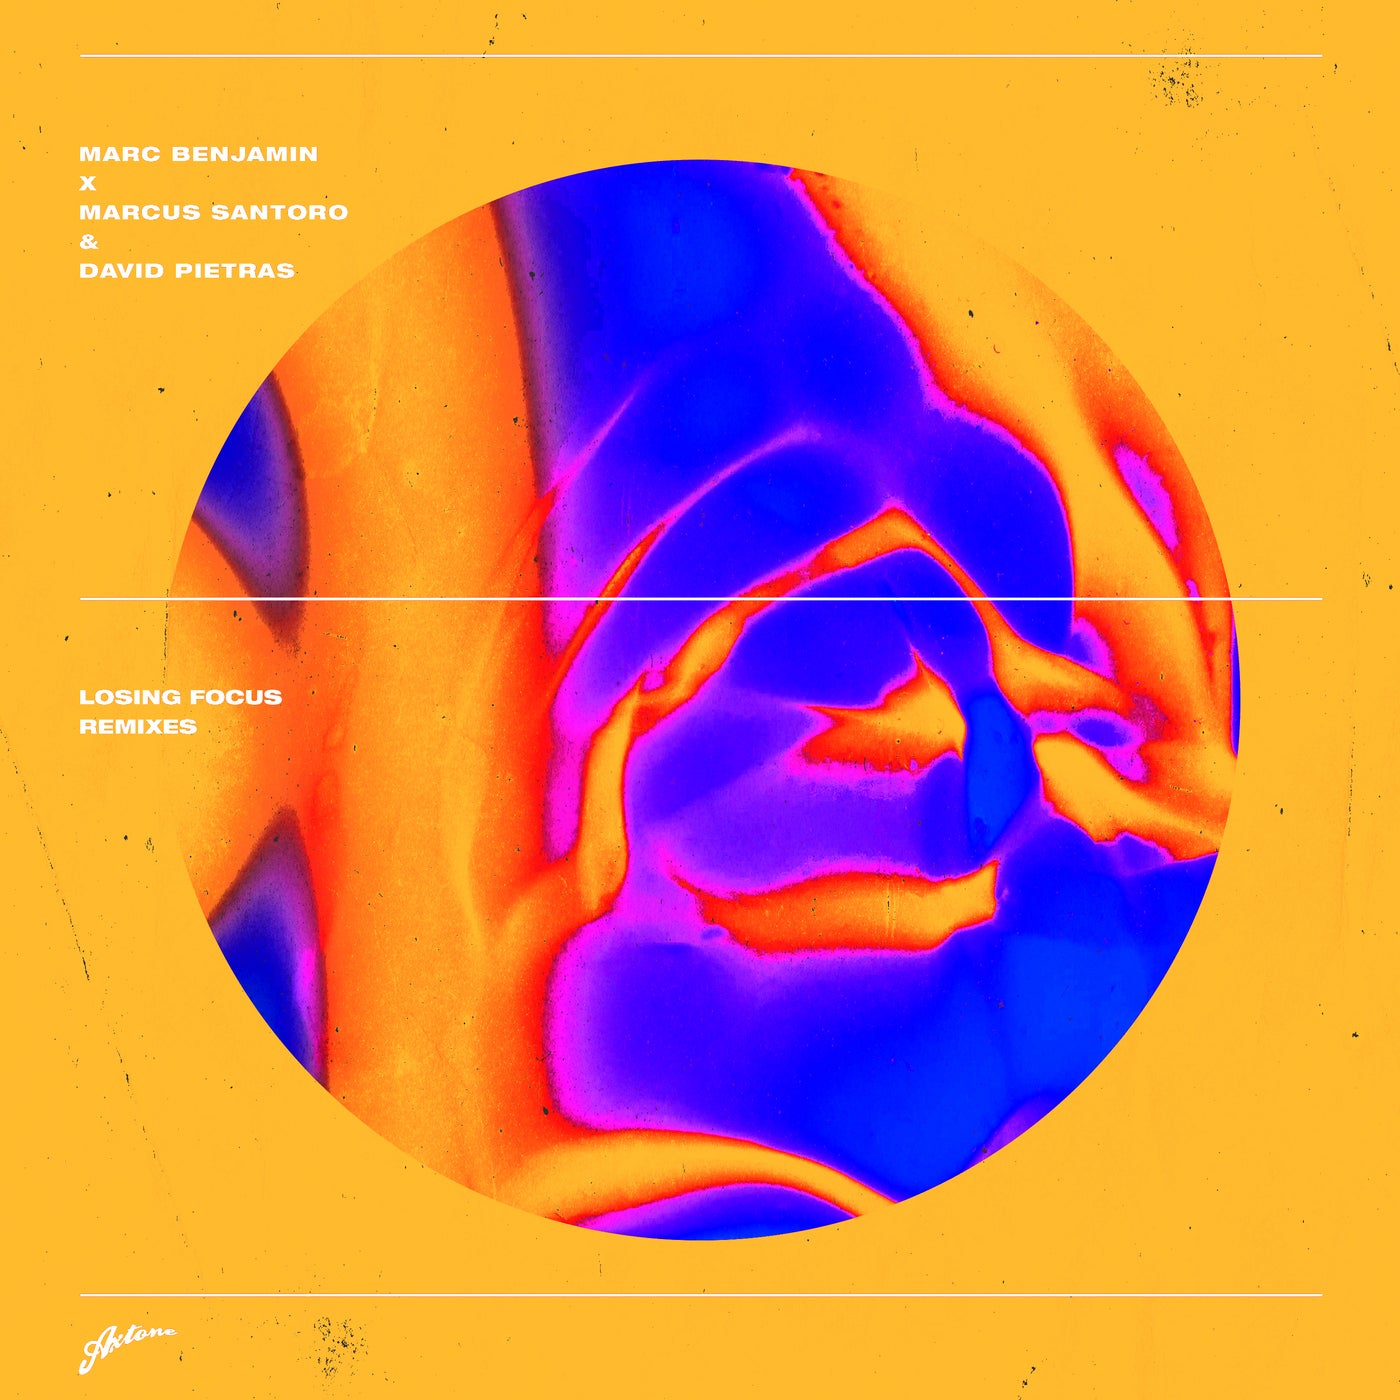 image cover: Marc Benjamin, Marcus Santoro, David Pietras - Losing Focus - Remixes / AXT149R